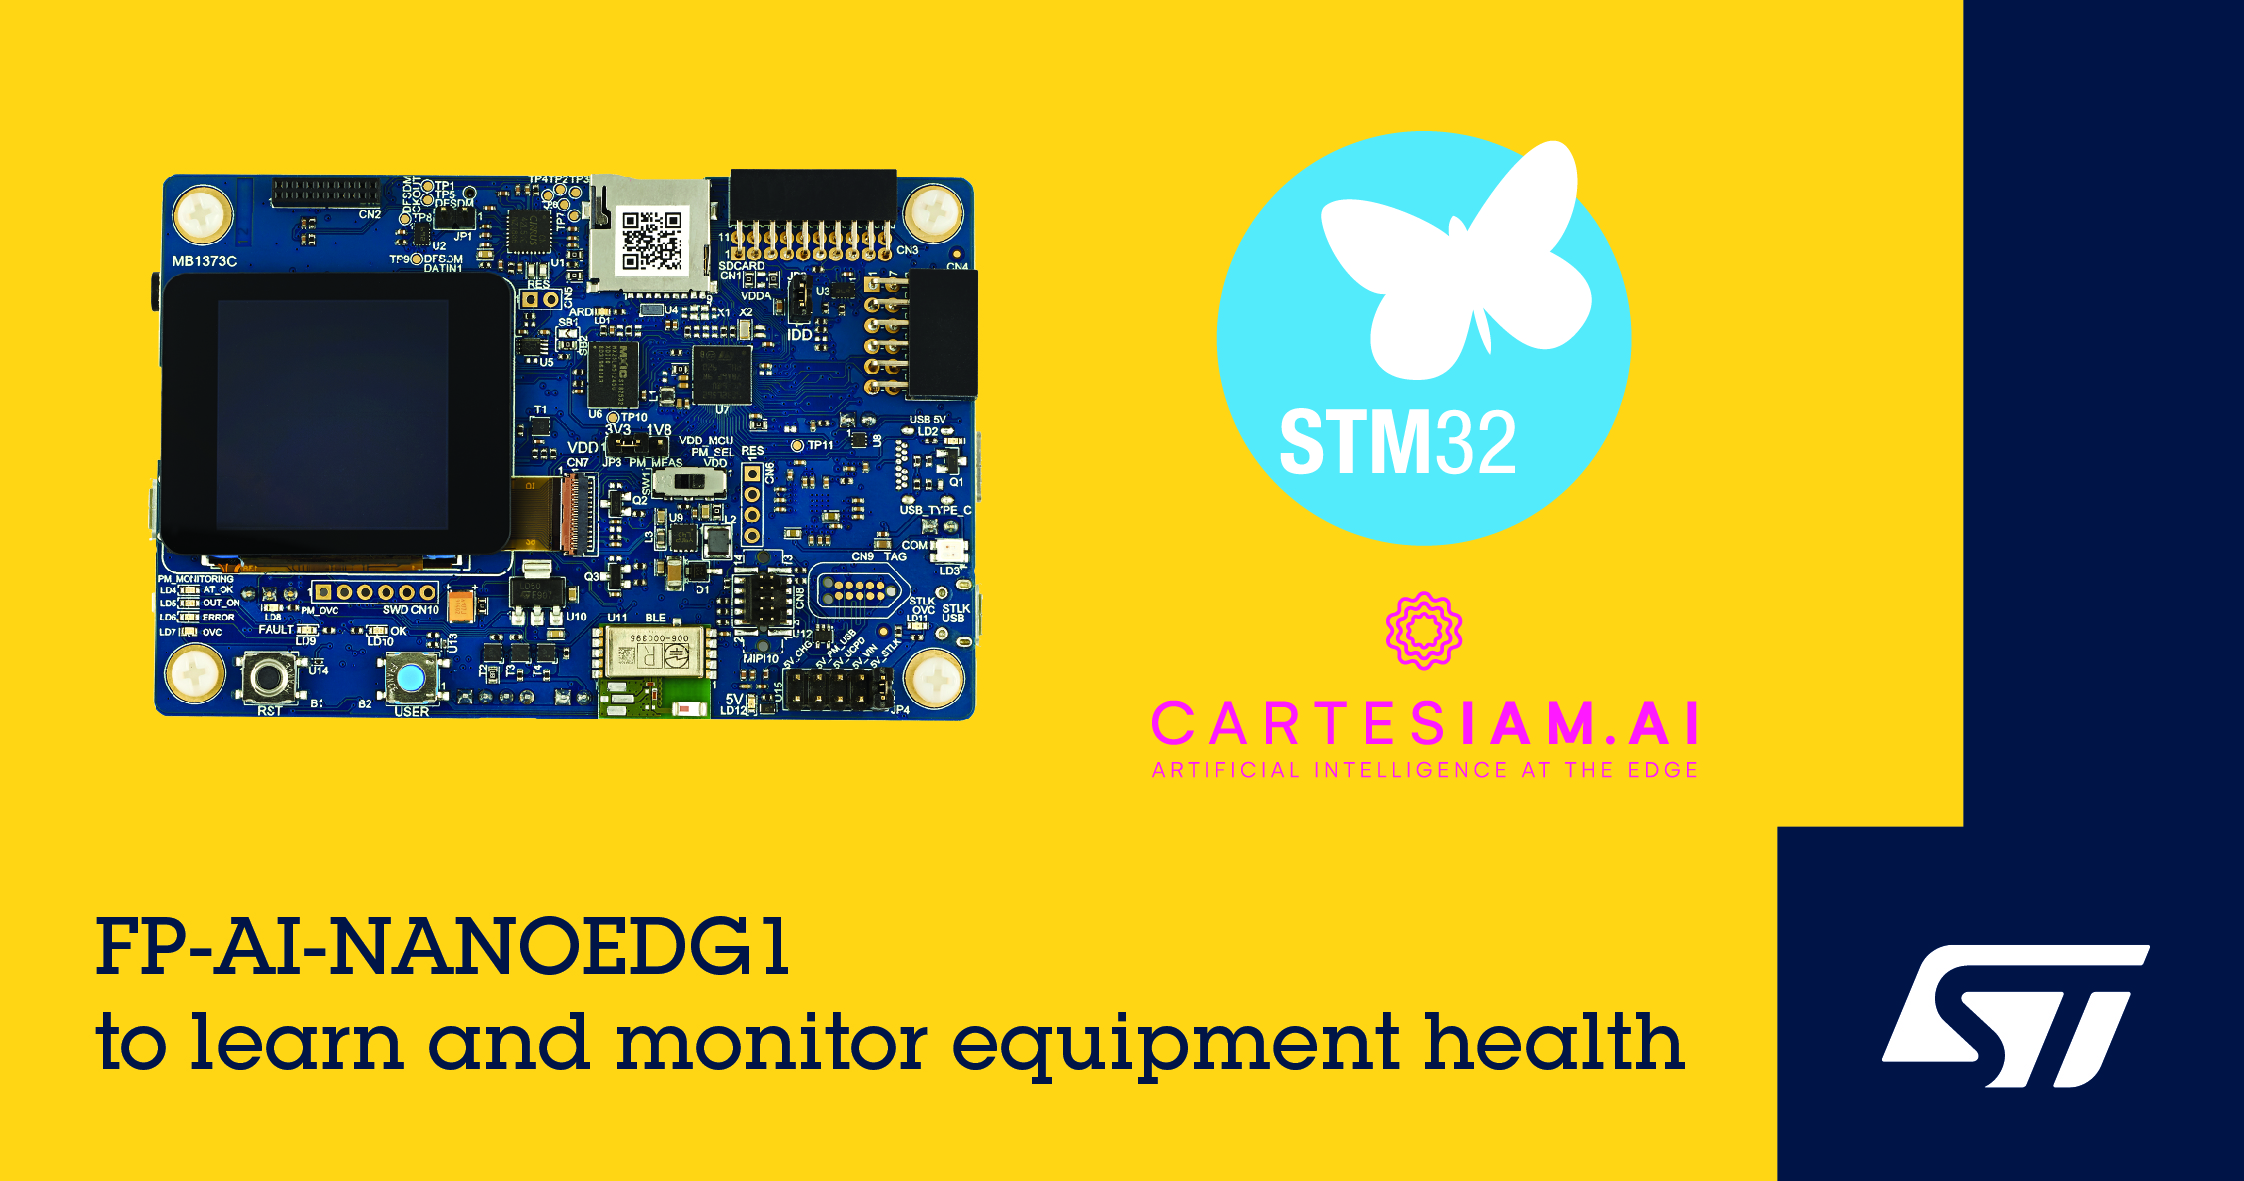 意法半导体发布STM32状态监测功能包，通过Cartesiam工具简化机器学习过程